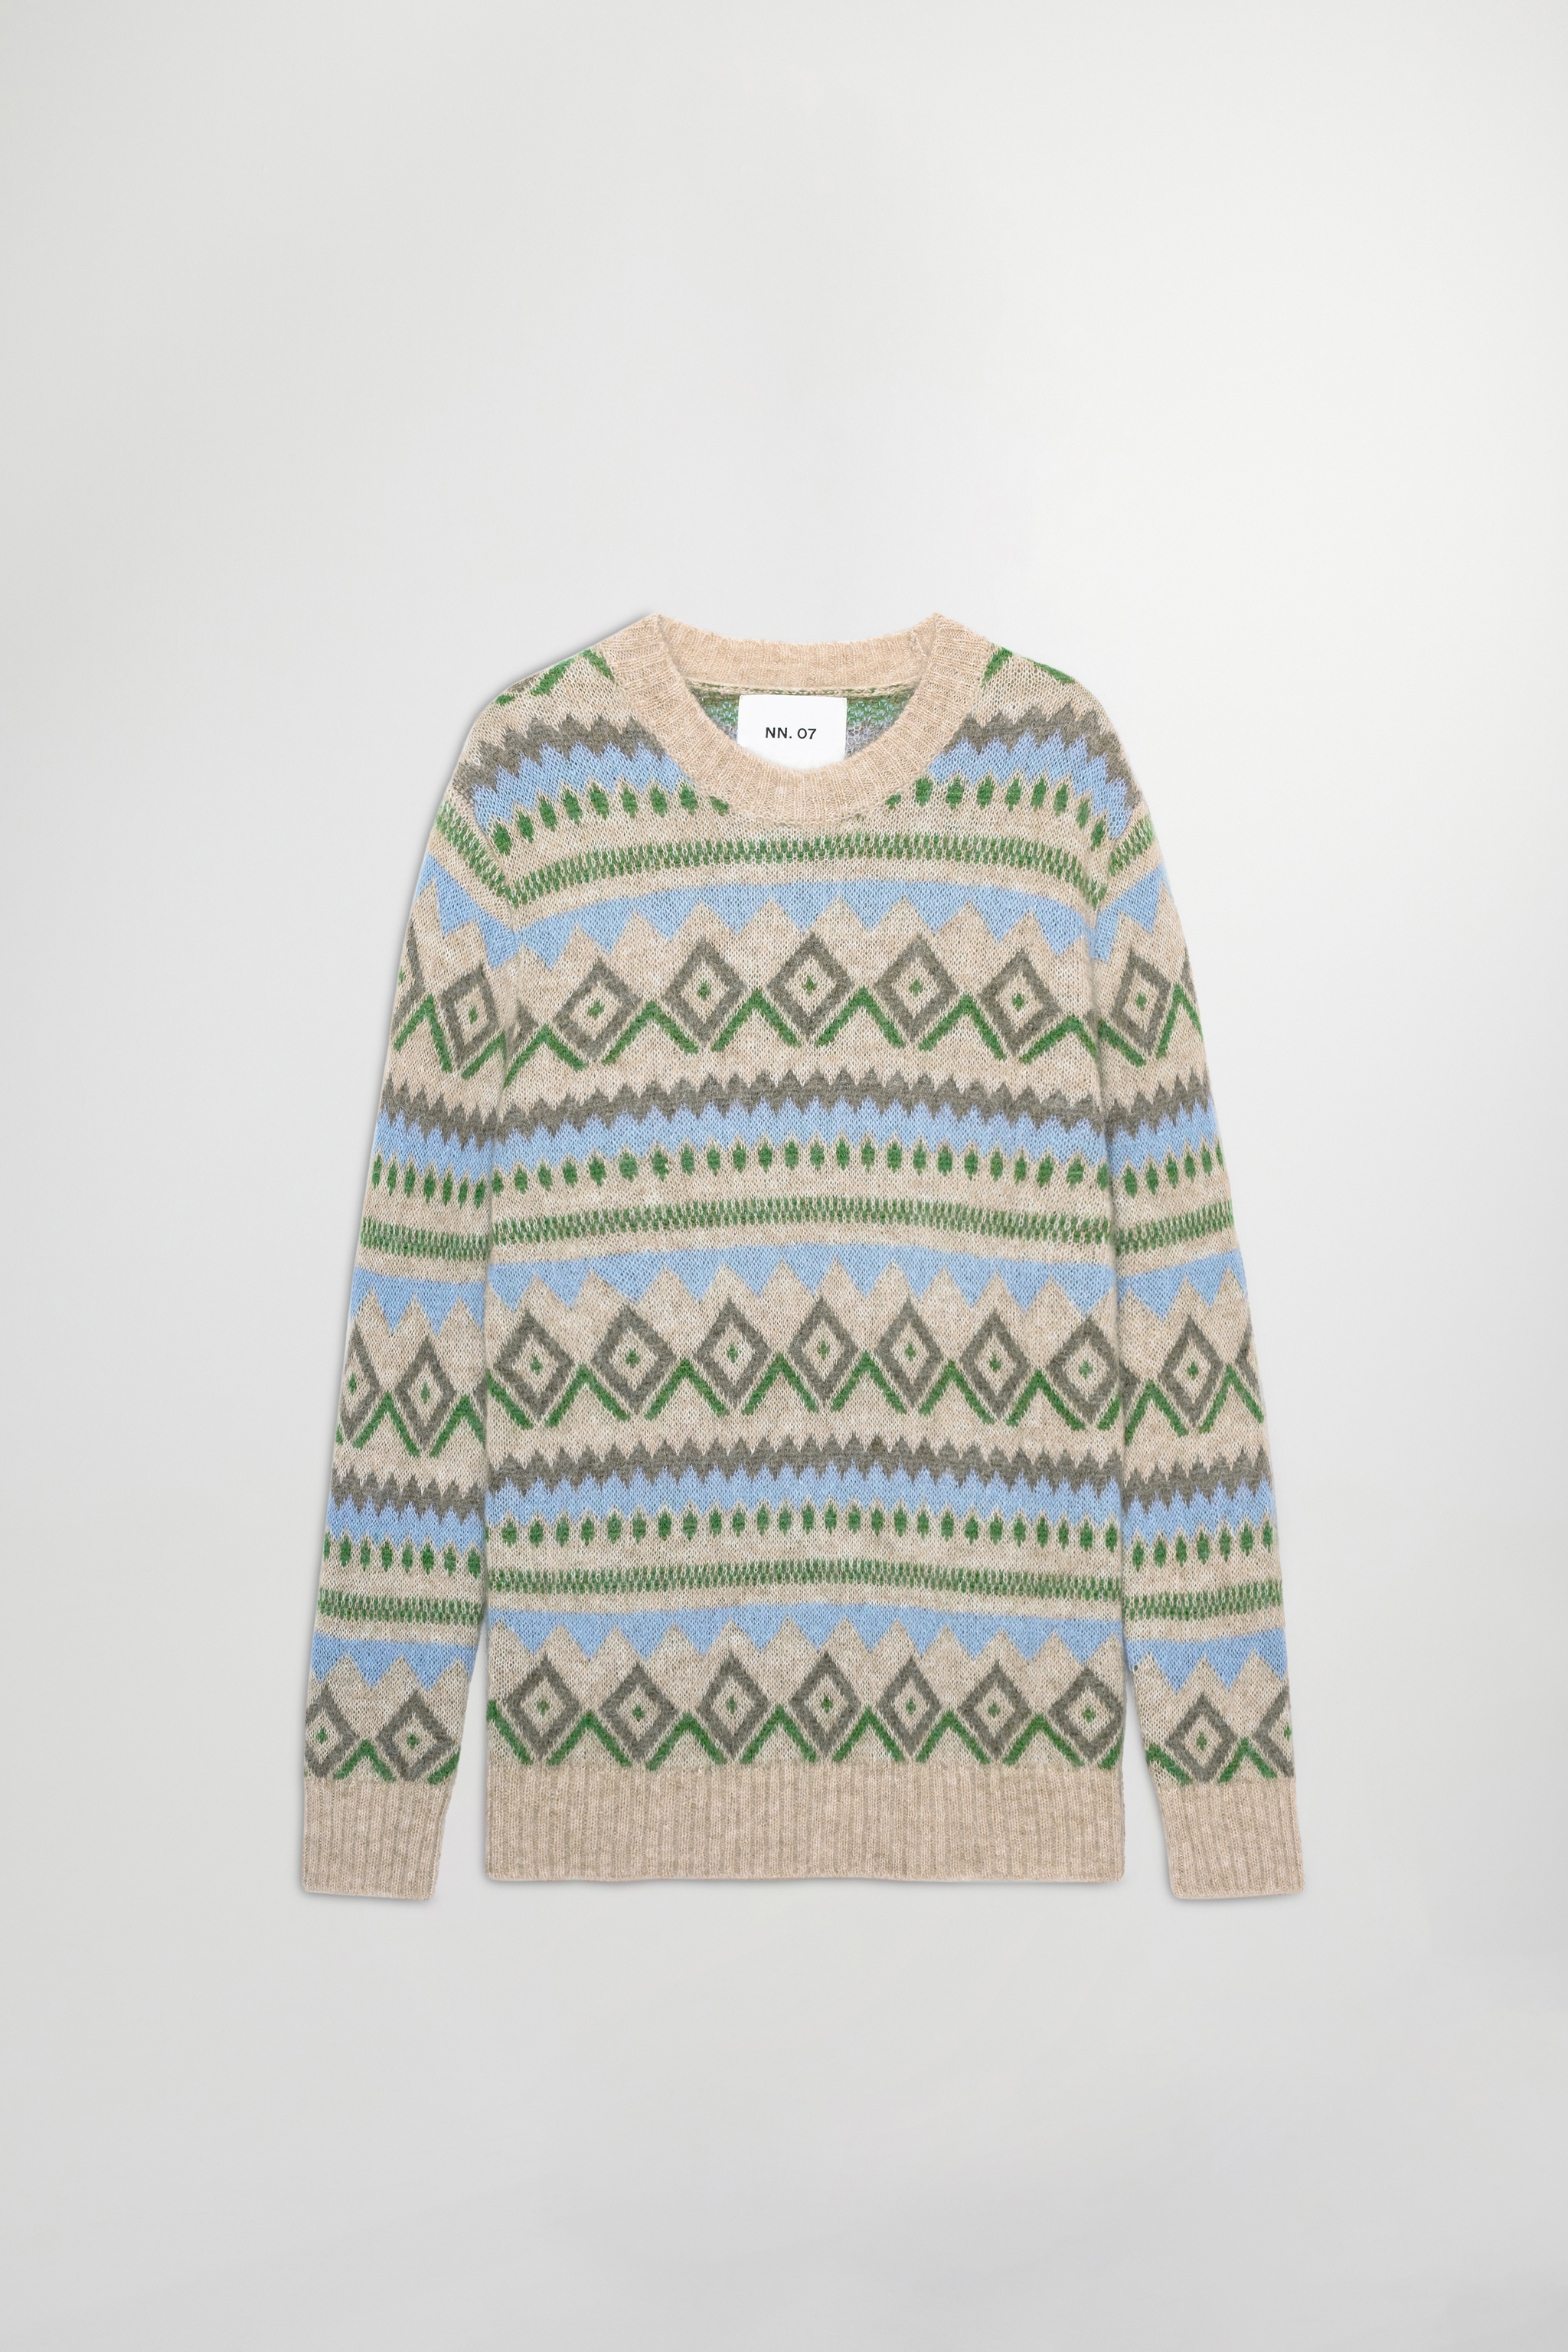 Morgan 6594 men's sweater - Muliti - Buy online at NN.07®